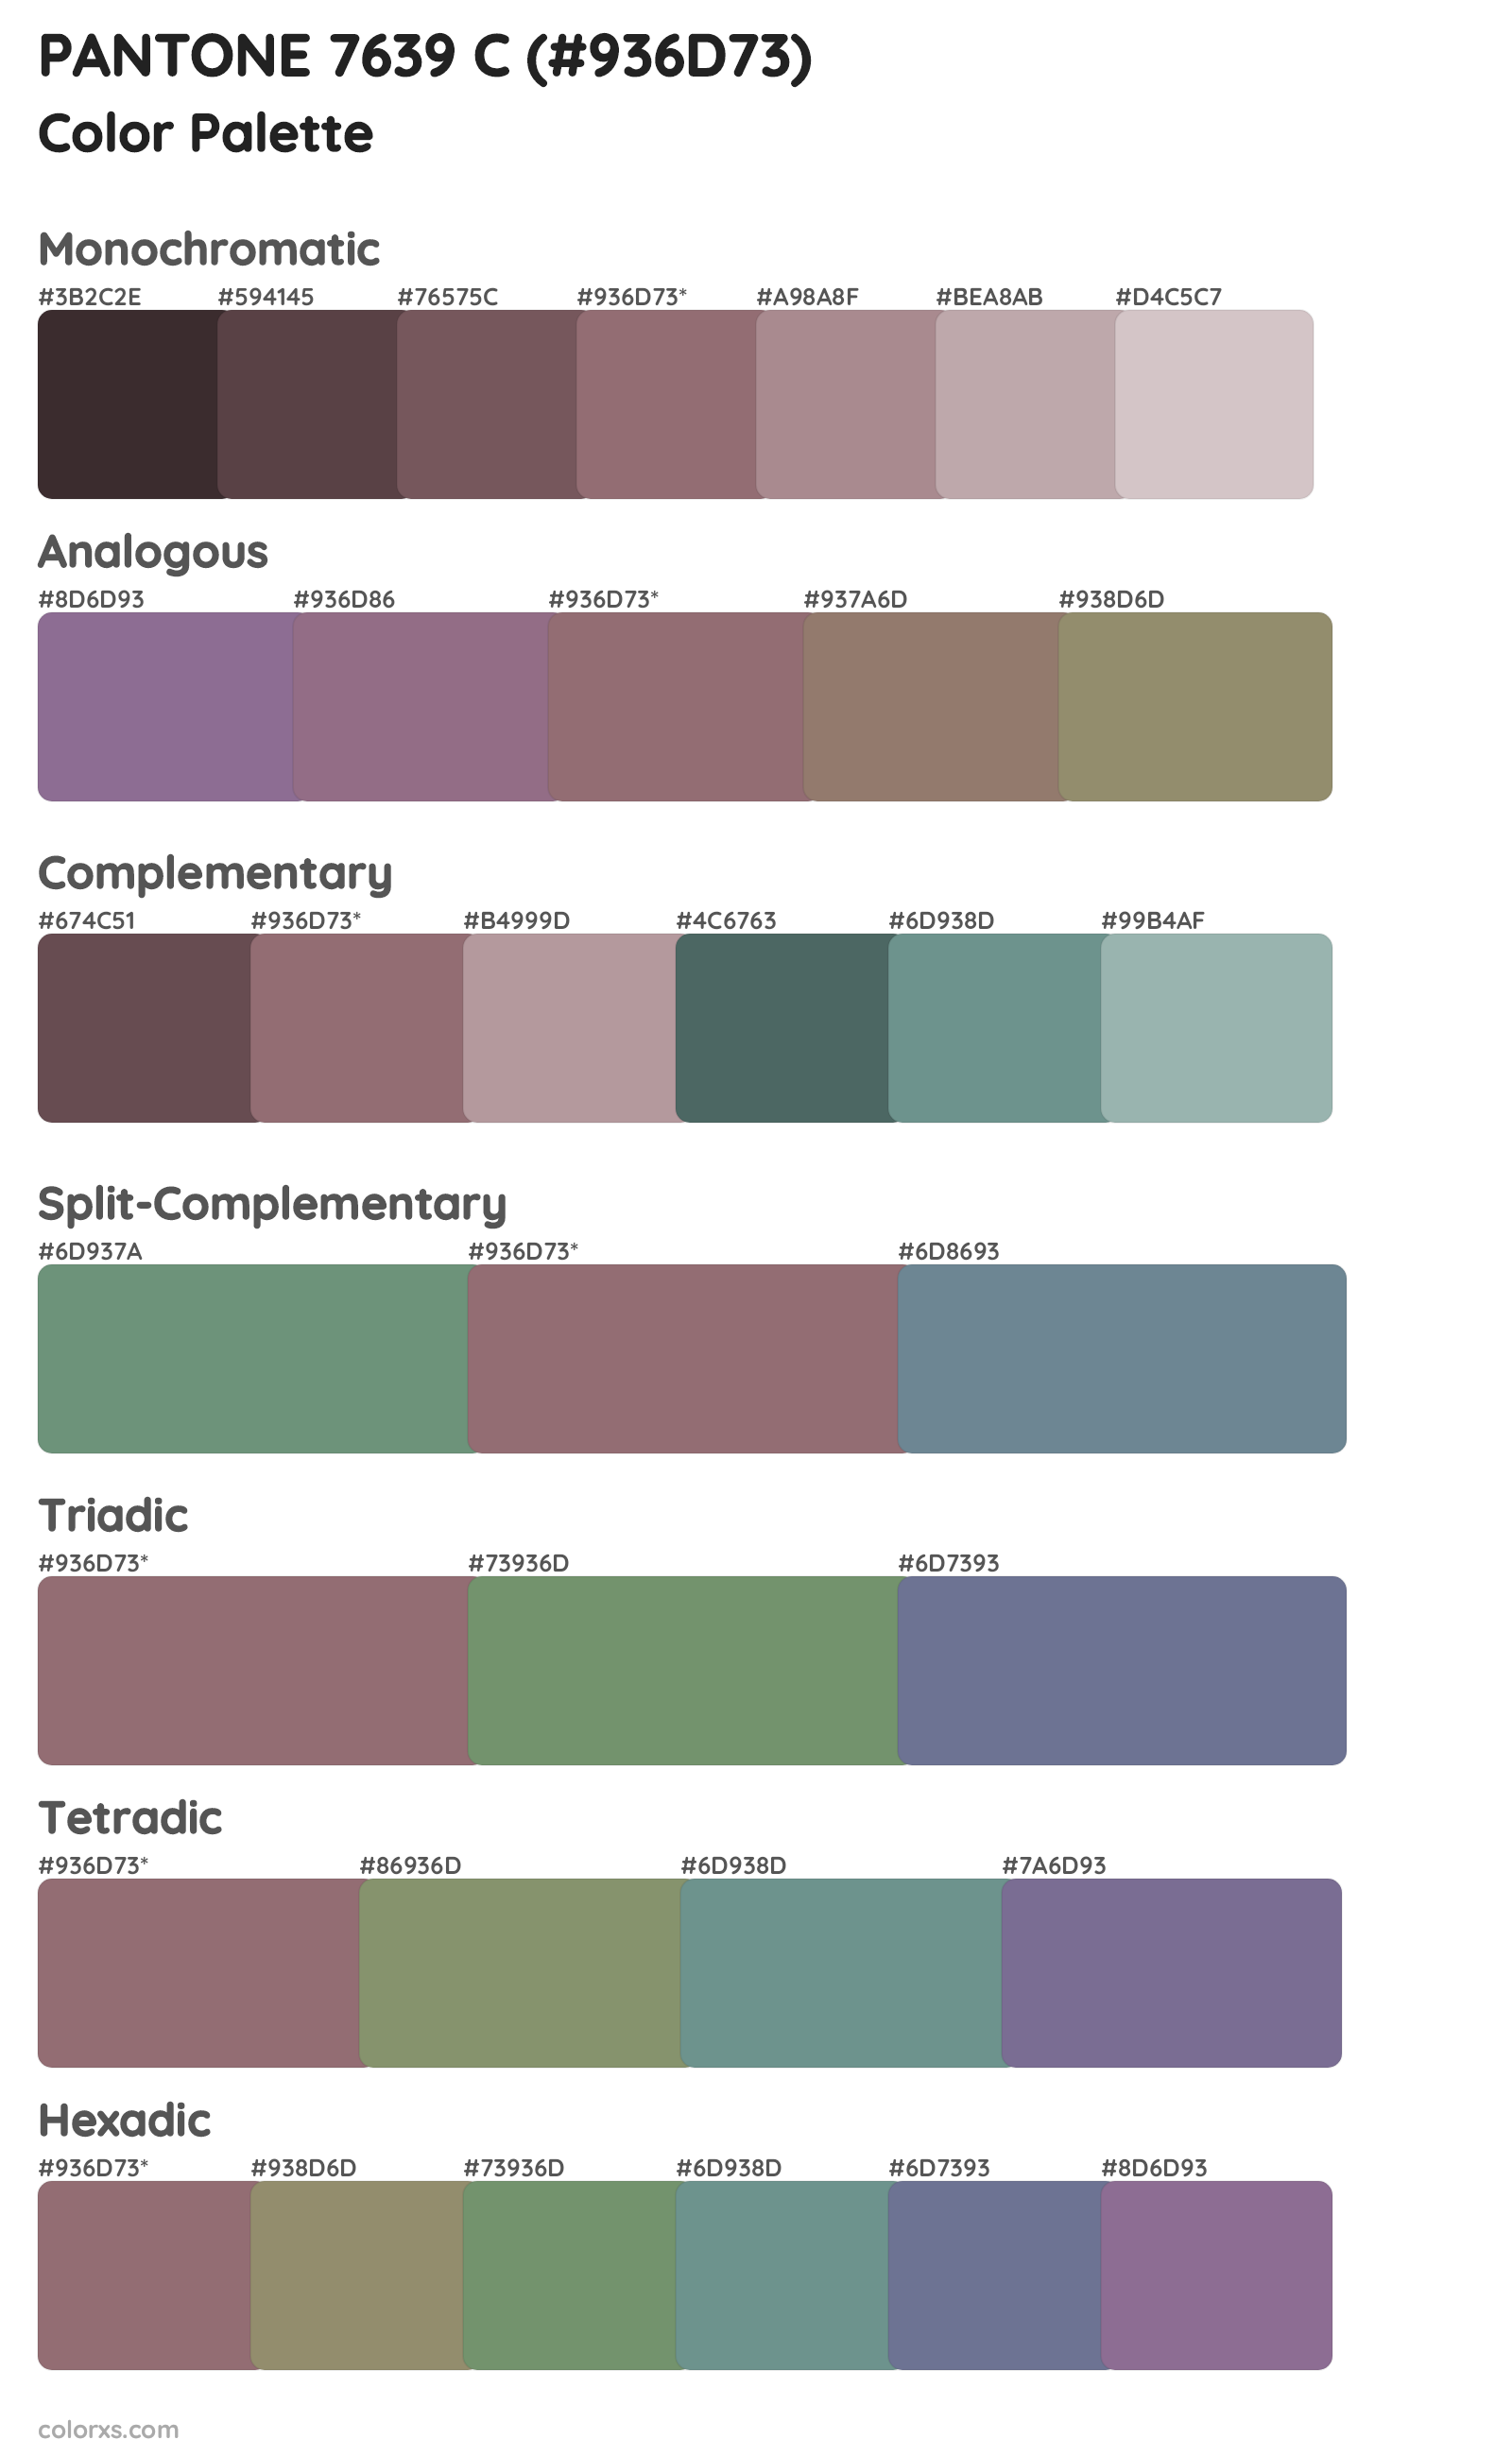 PANTONE 7639 C Color Scheme Palettes